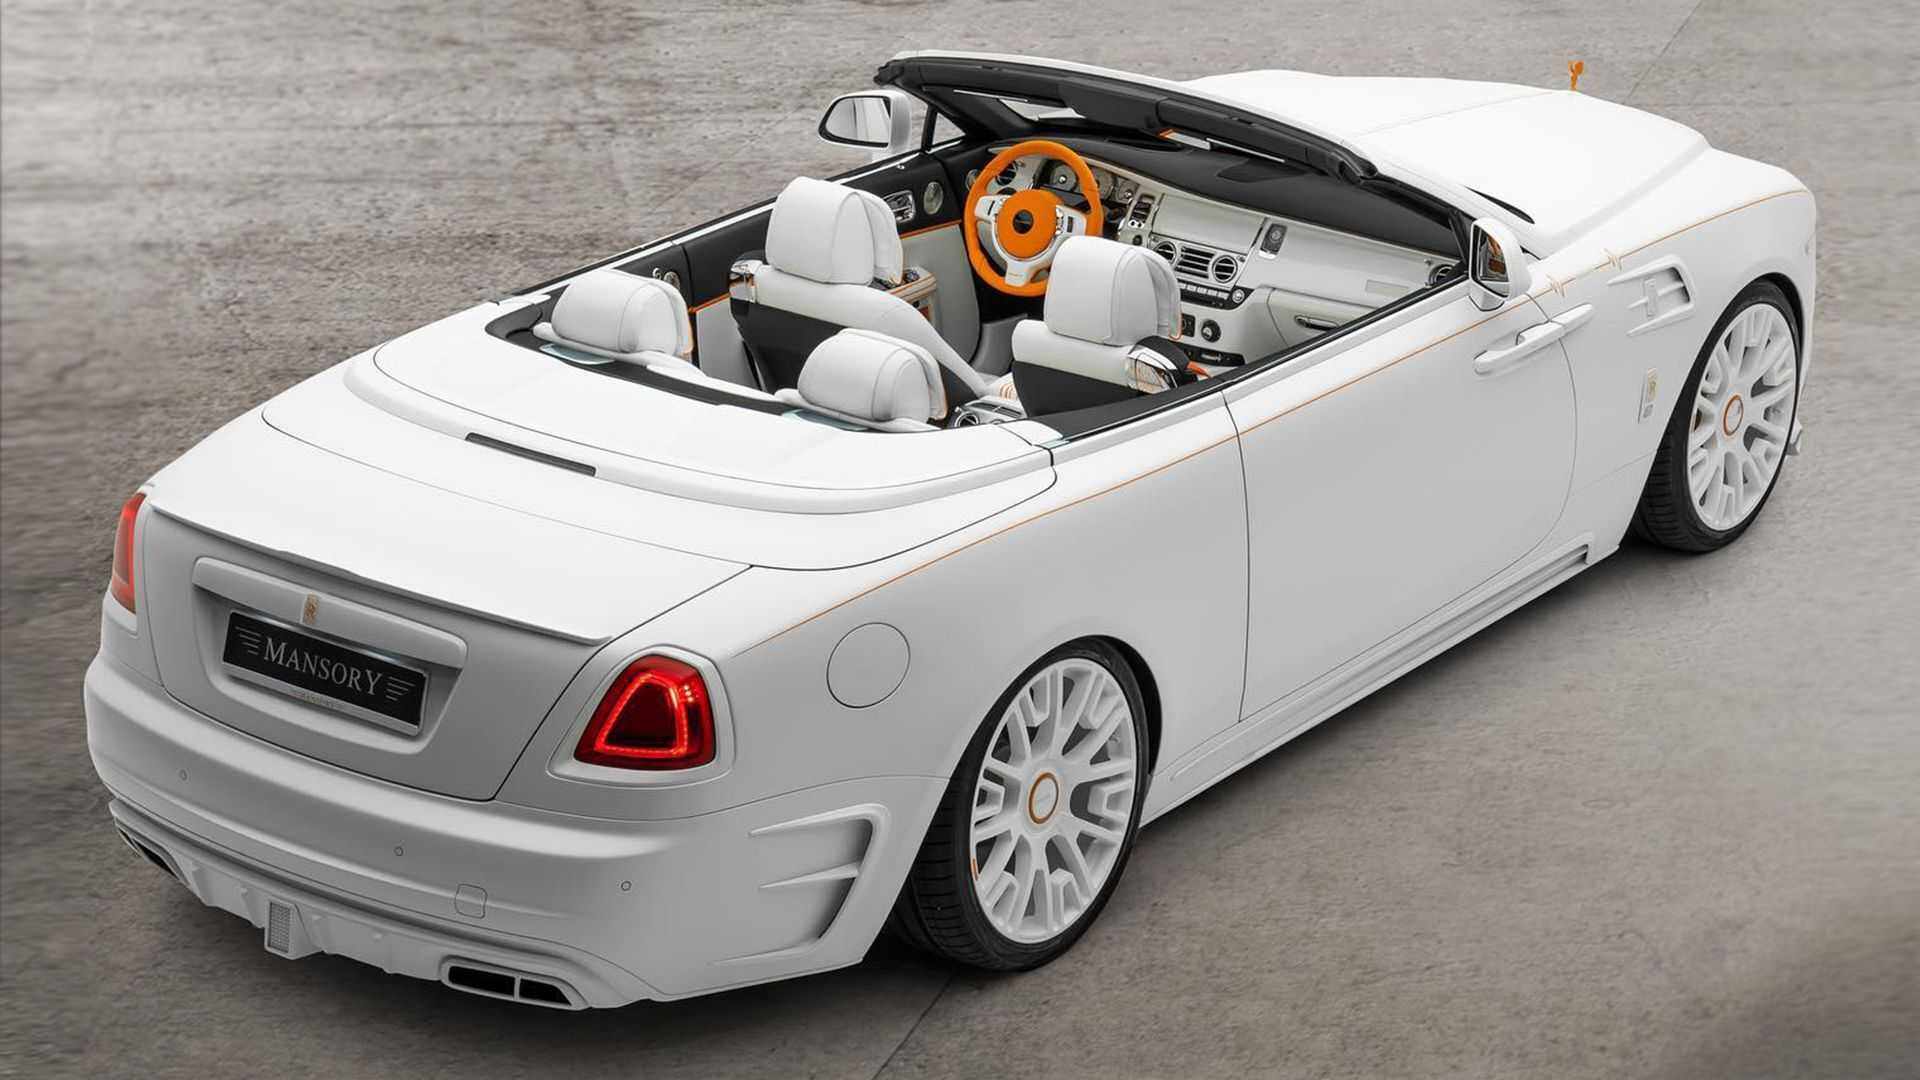 Hãng độ Mansory ra mắt phiên bản độc đáo của xe siêu sang Rolls-Royce